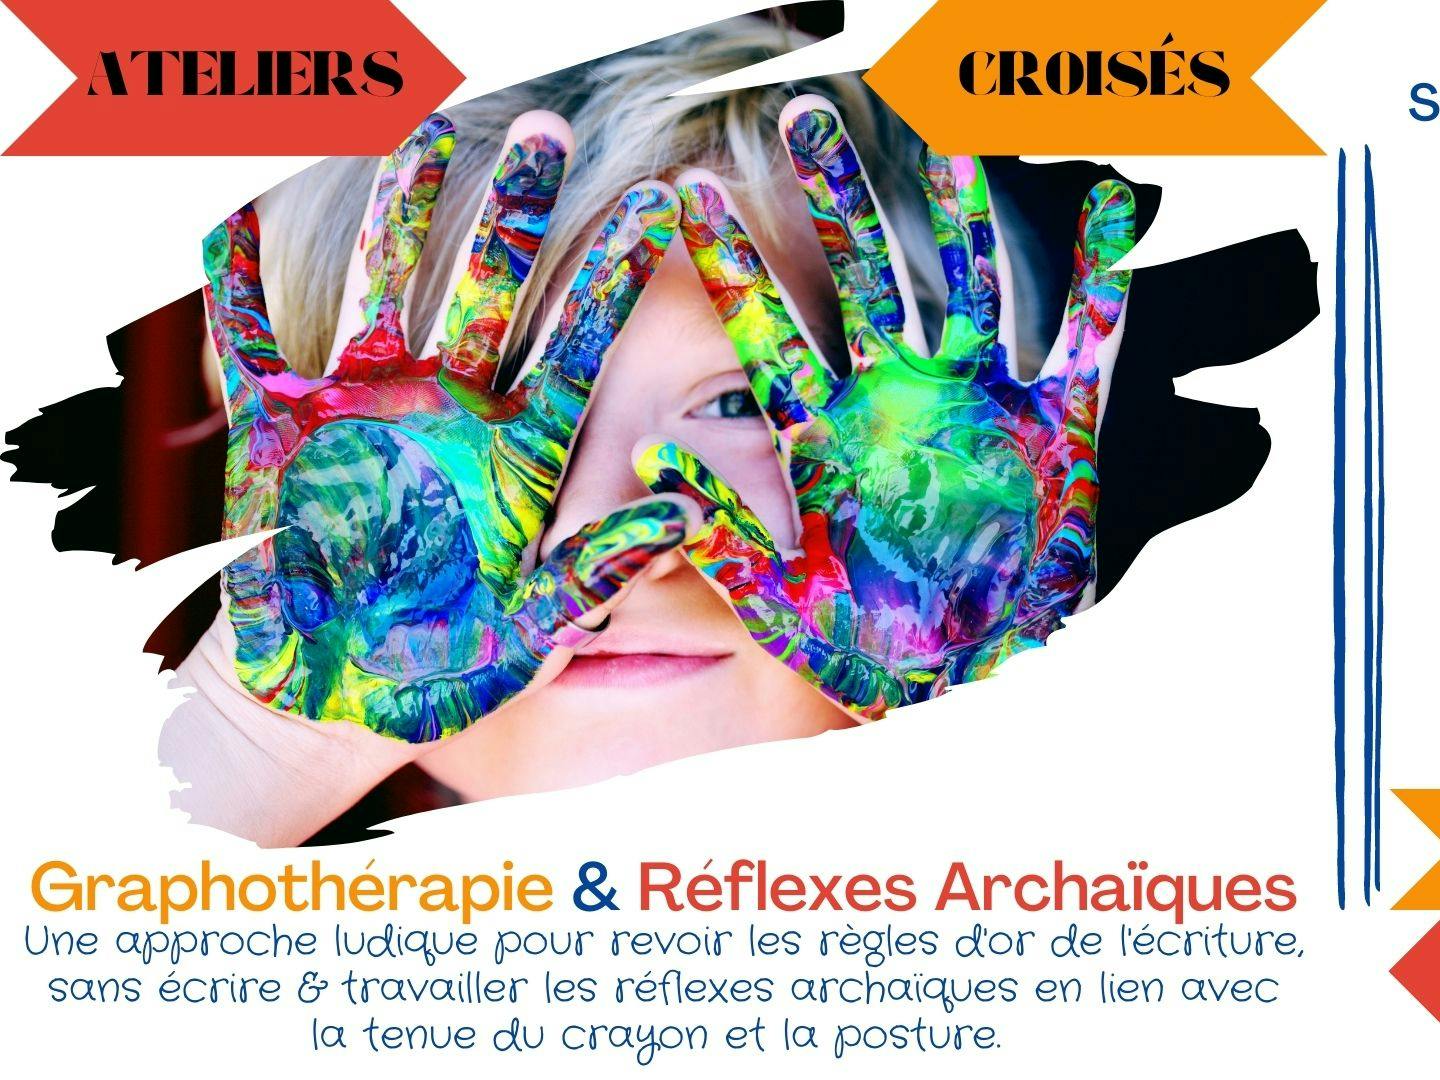 19 Novembre : Ateliers Croisés Graphothérapie & Réflexes Archaïques